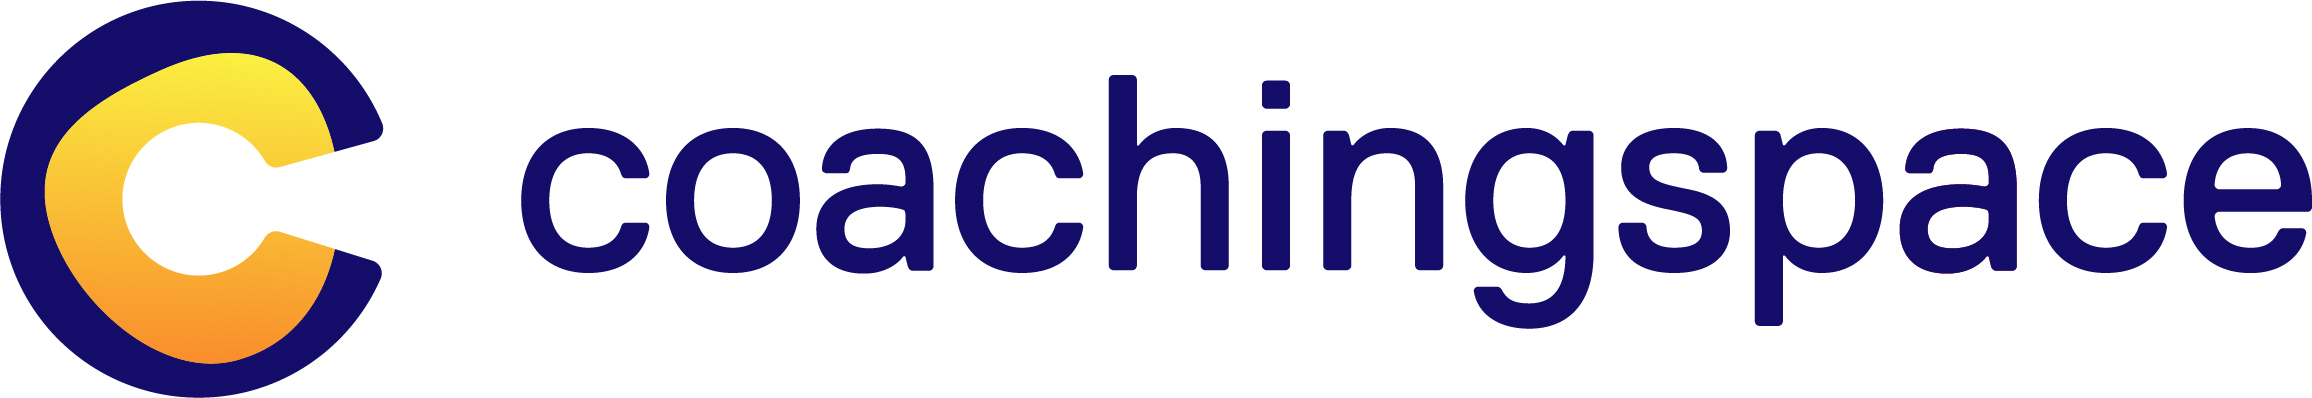 Coachingspace GmbH Logo